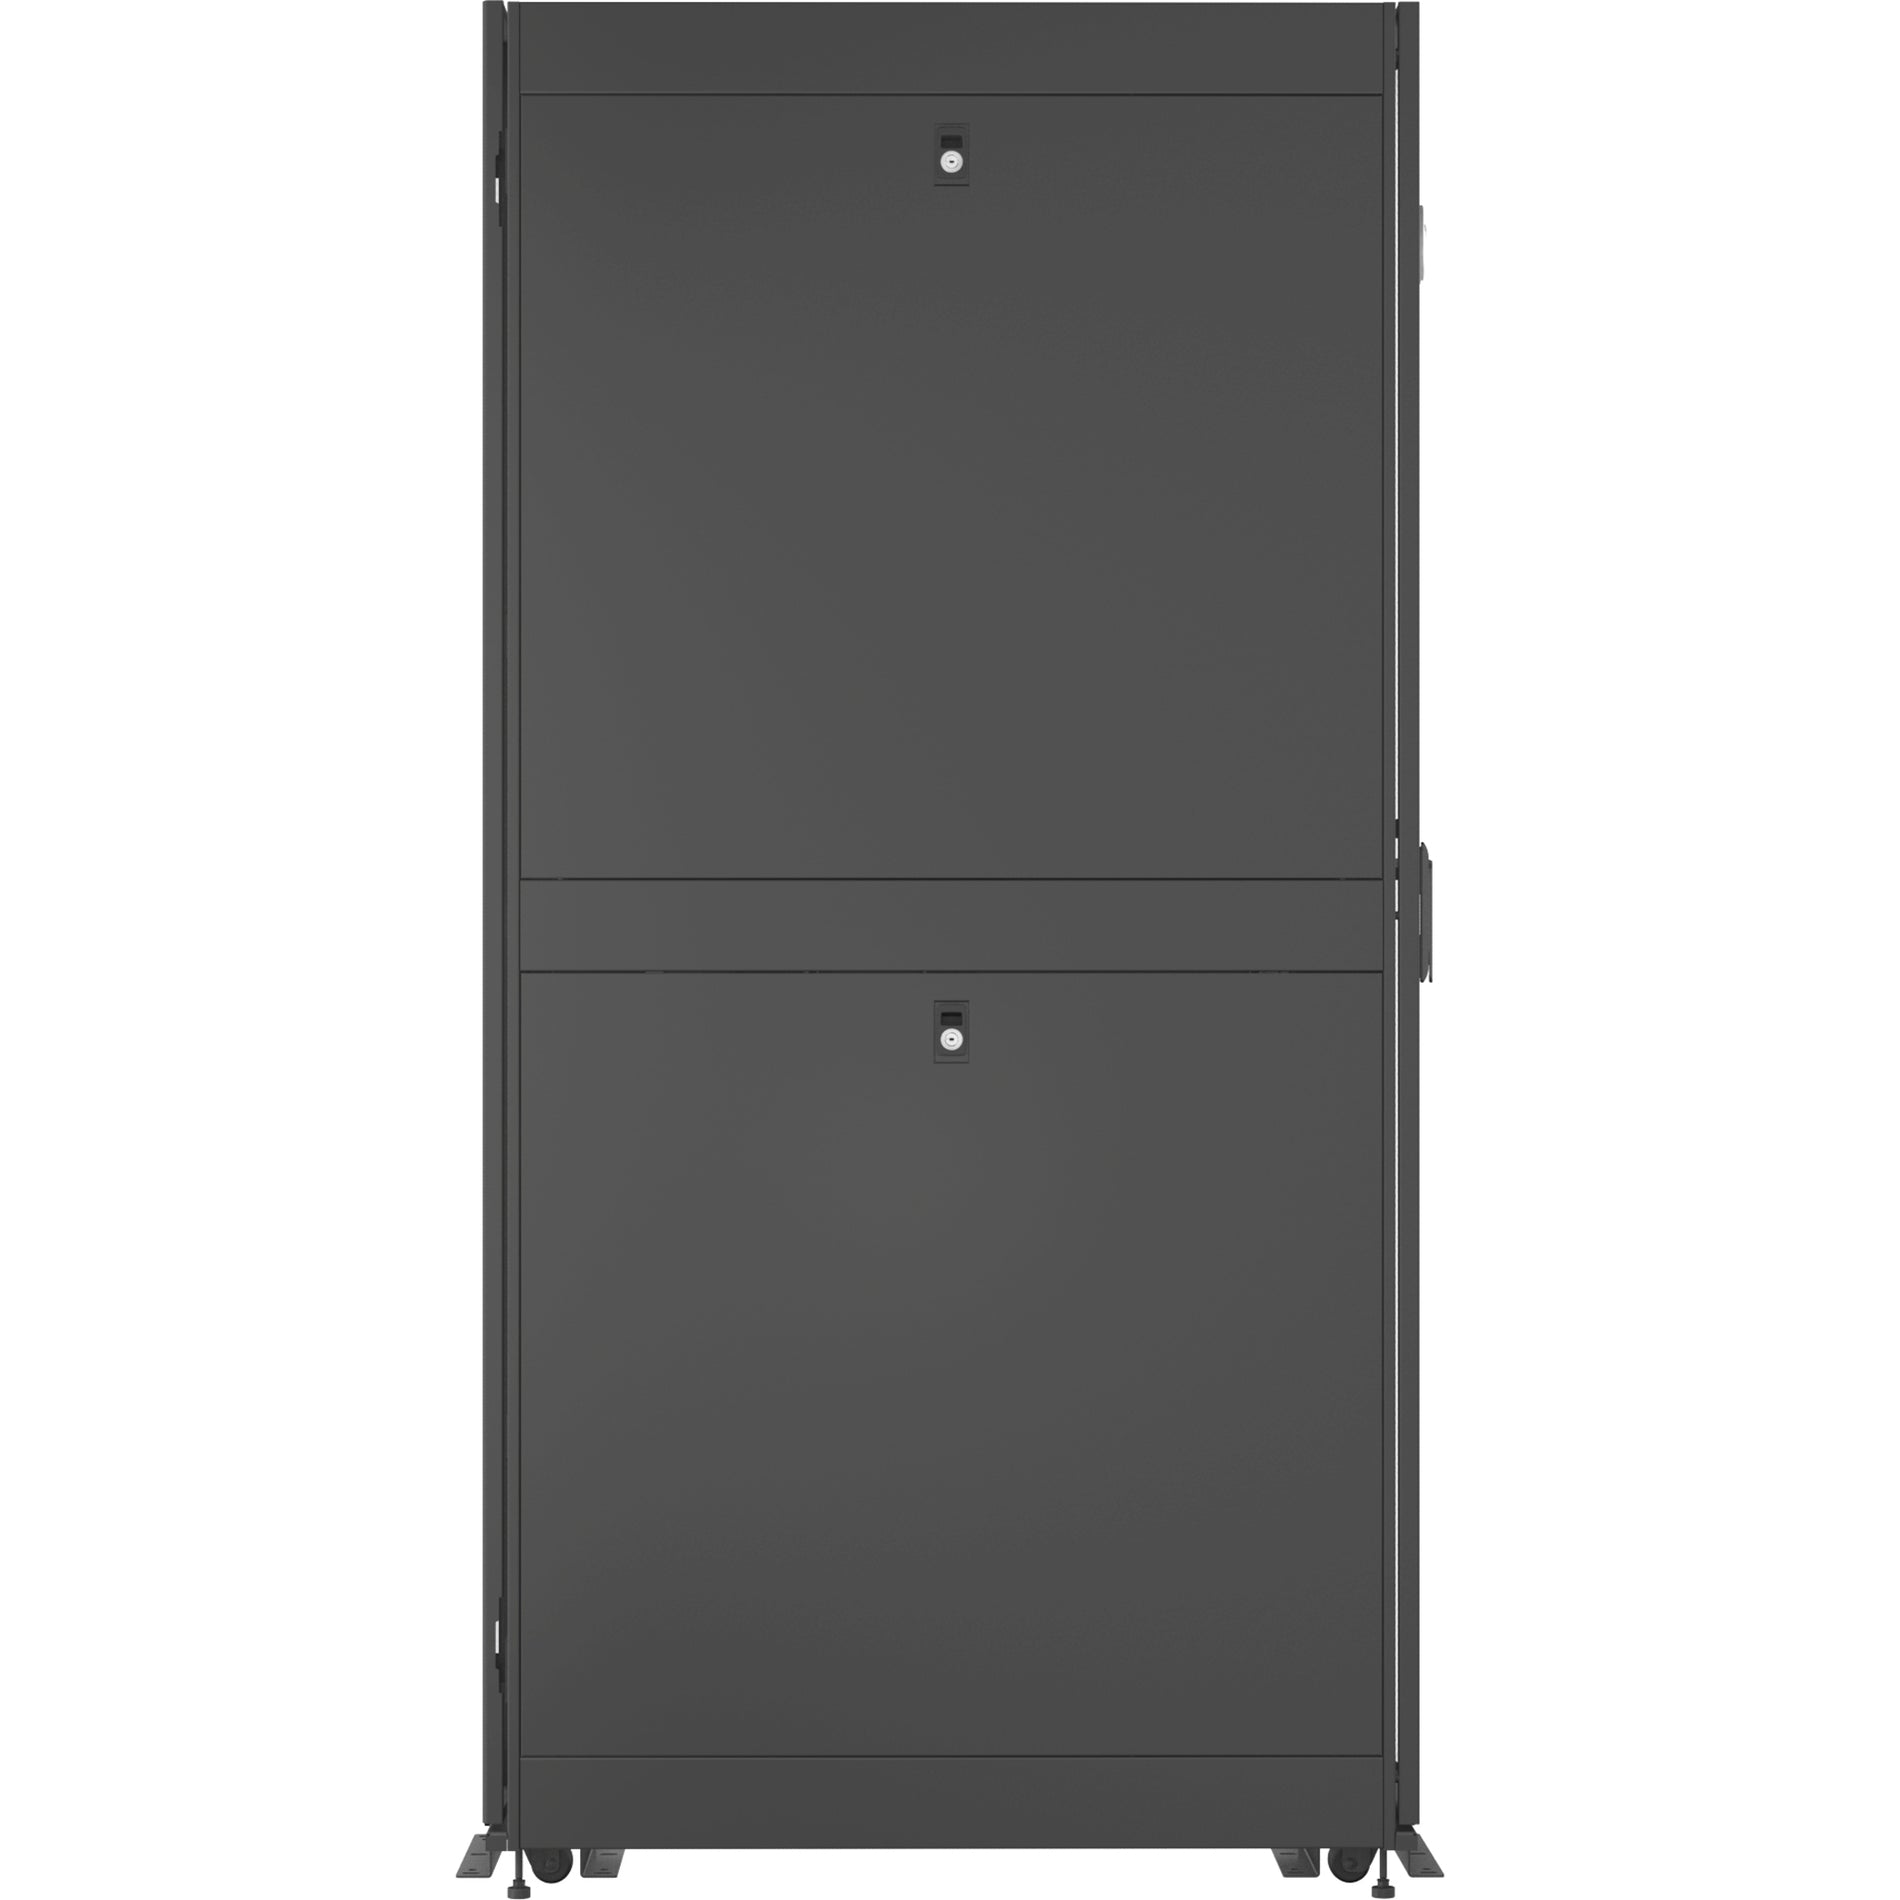 VERTIV VR3107 Vertiv VR Rack - 48U Server Rack Enclosure 600x1100mm 19-inch Cabinet